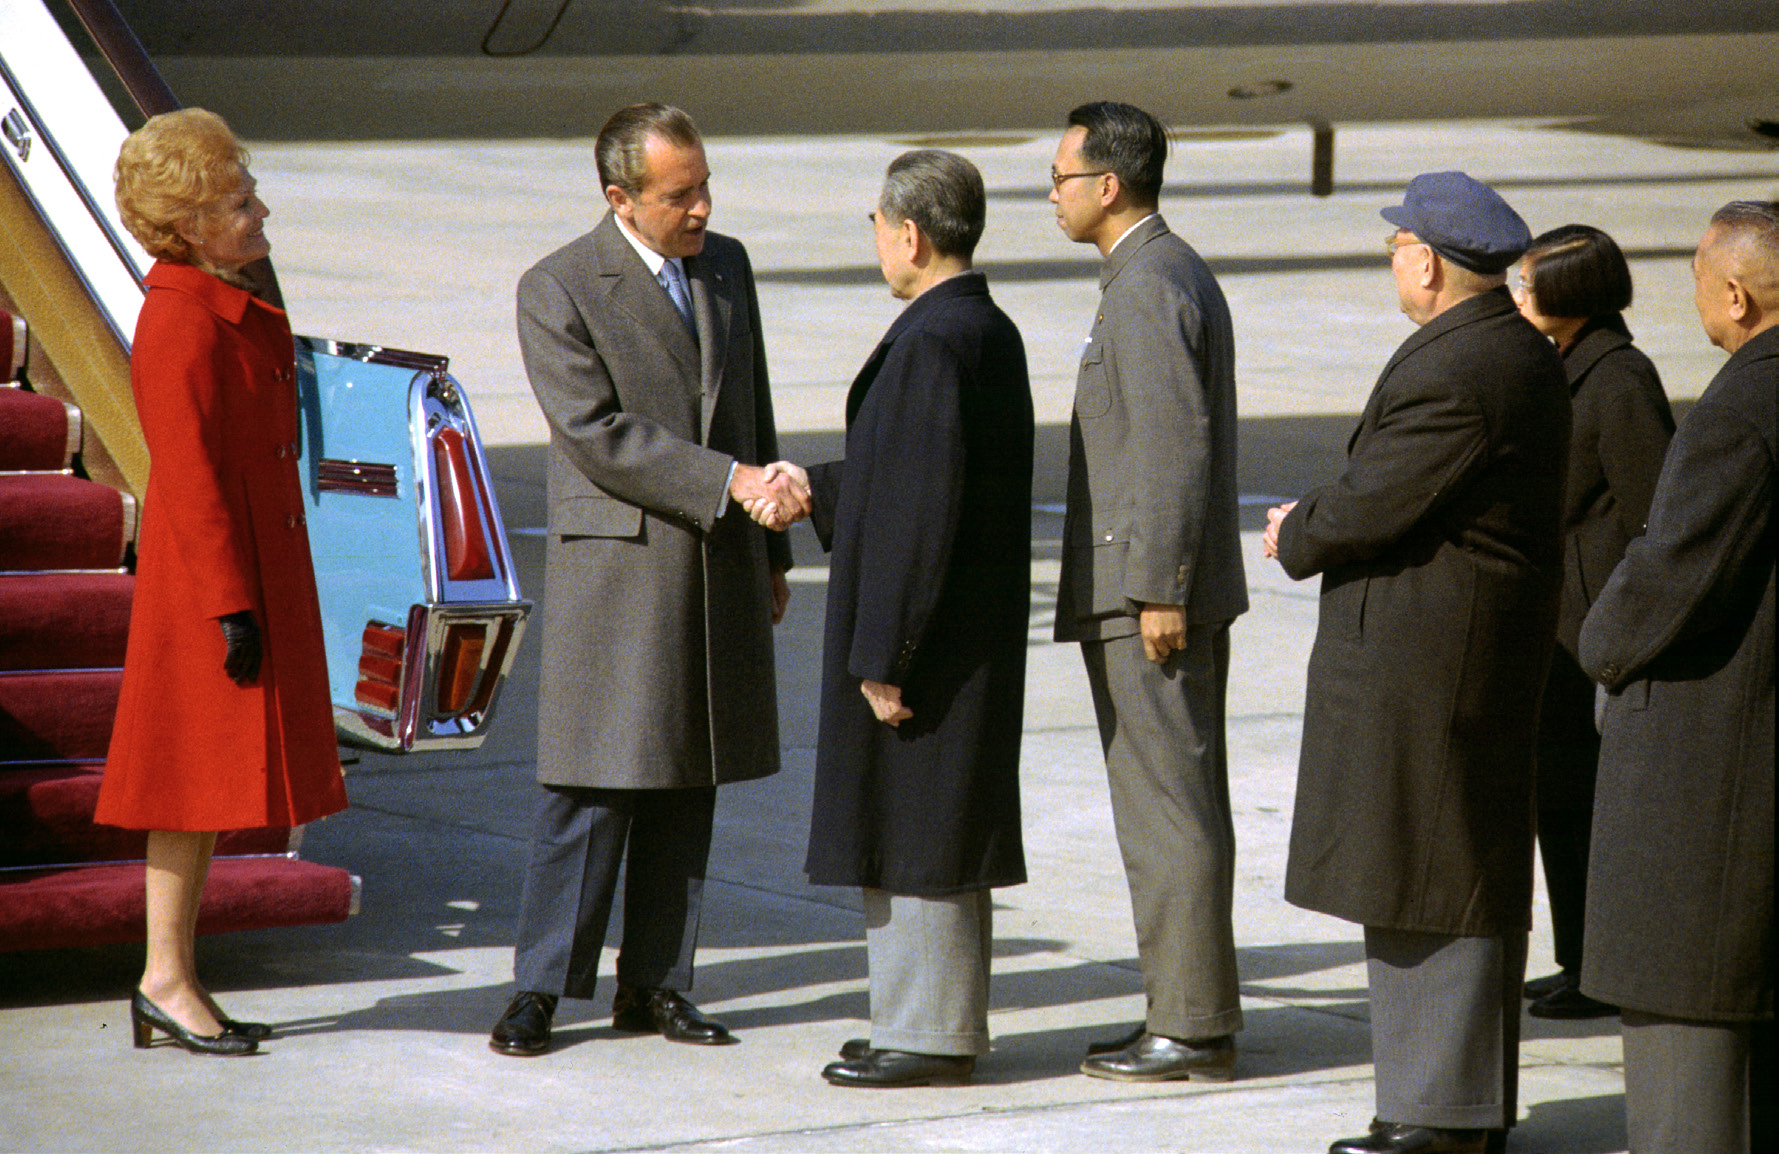 ABD Başkanı Richard Nixon’ın 1972’de Çin’e gerçekleştirdiği ziyaret, 21 Şubat 1972. (Shou, 2020)